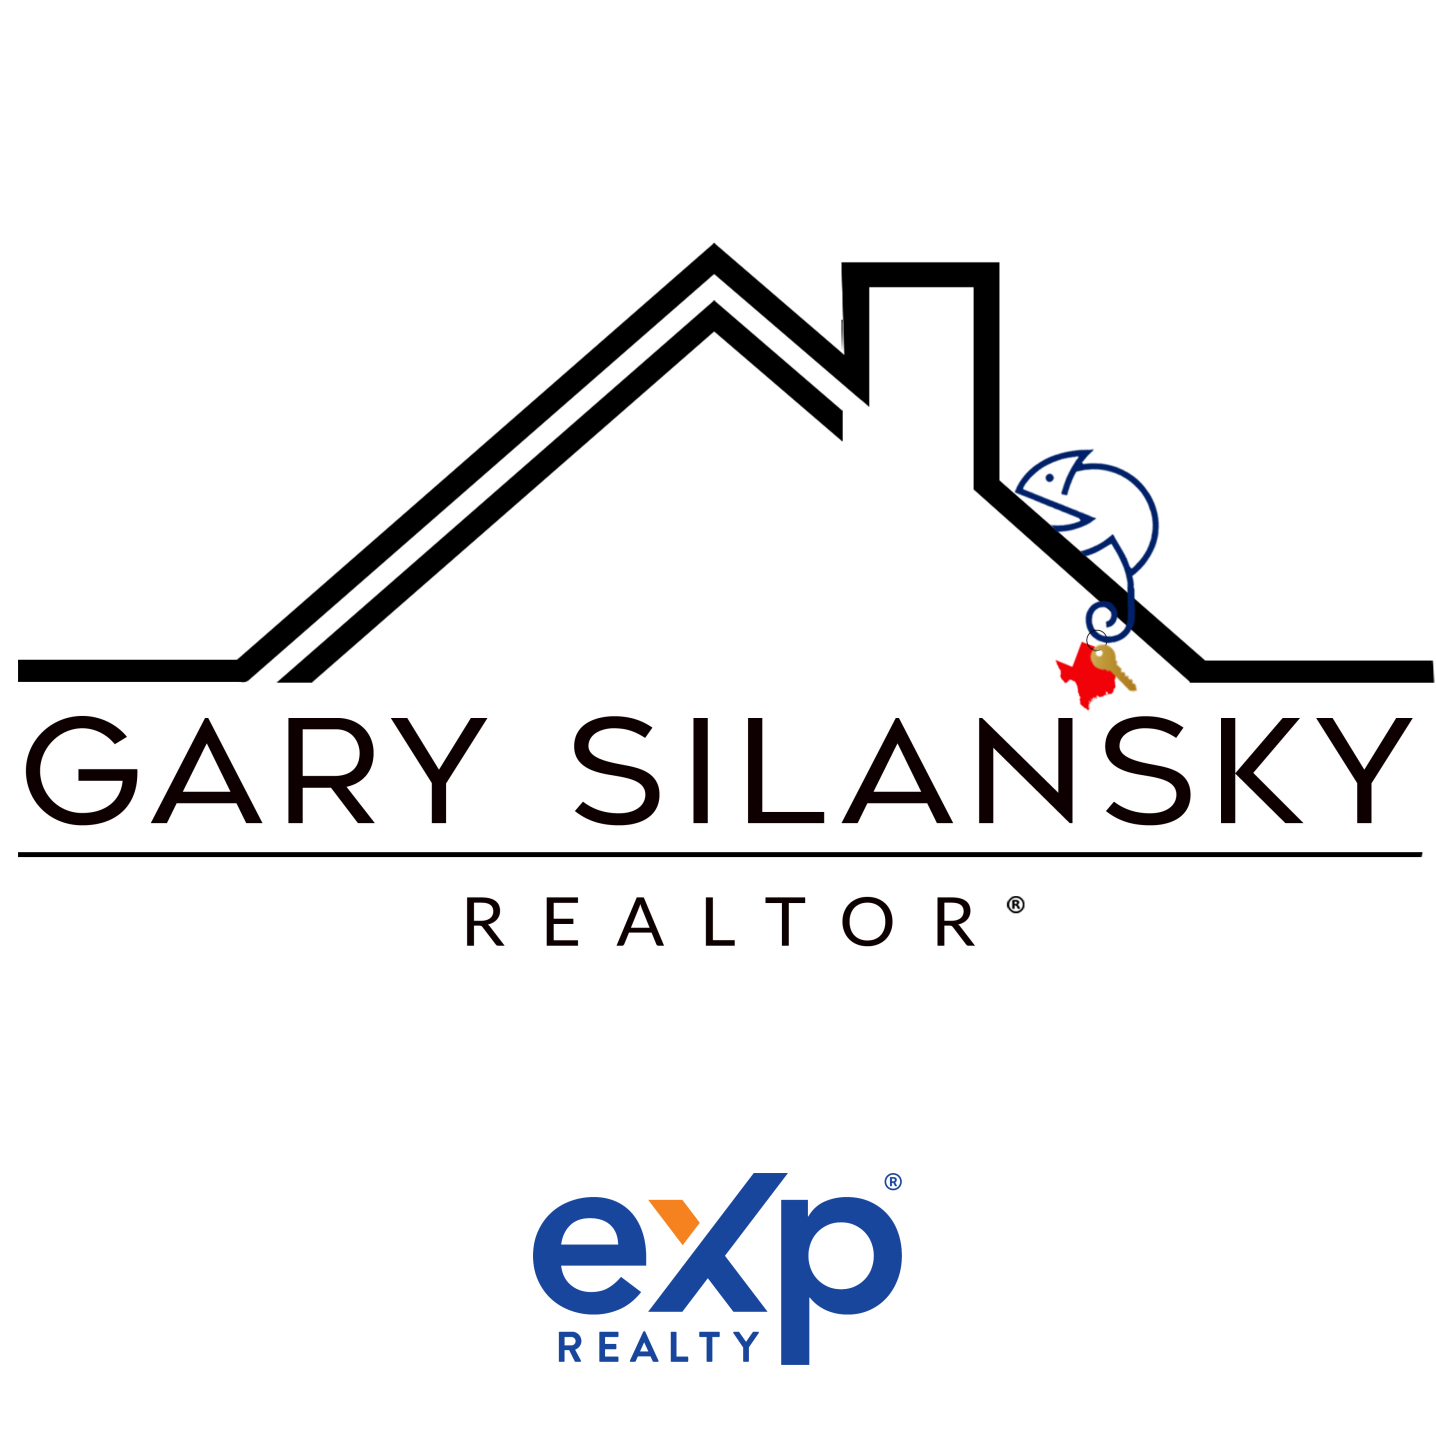 Gary Silansky - Realtor - Dallas, TX 75252 - (972)374-8505 | ShowMeLocal.com